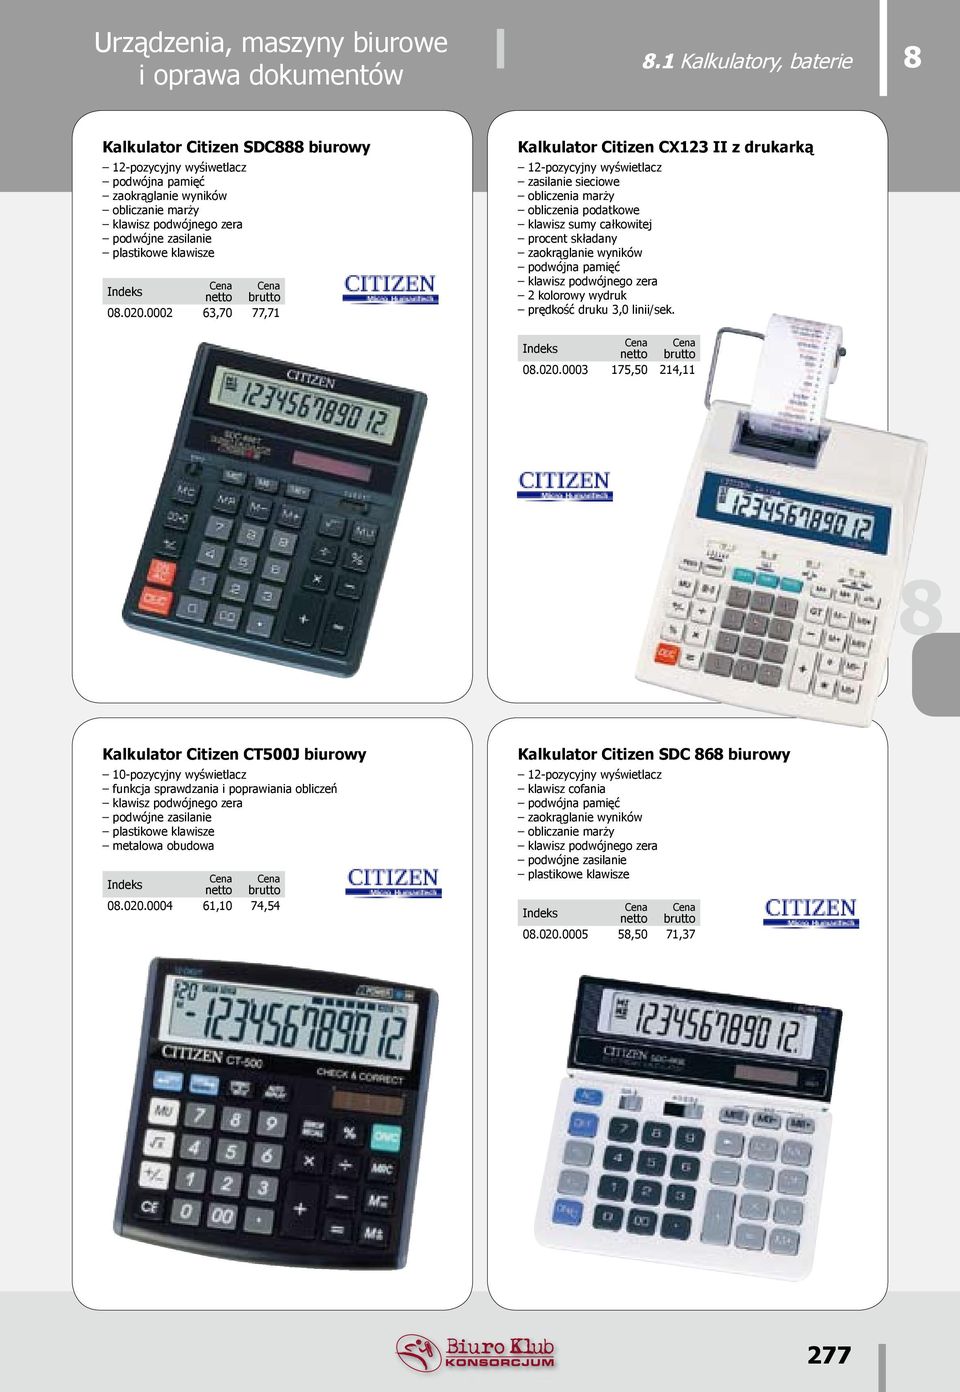 020.0002 63,70 77,71 Kalkulator Citizen CX123 II z drukarką 12-pozycyjny wyświetlacz zasilanie sieciowe obliczenia marży obliczenia podatkowe klawisz sumy całkowitej procent składany zaokrąglanie